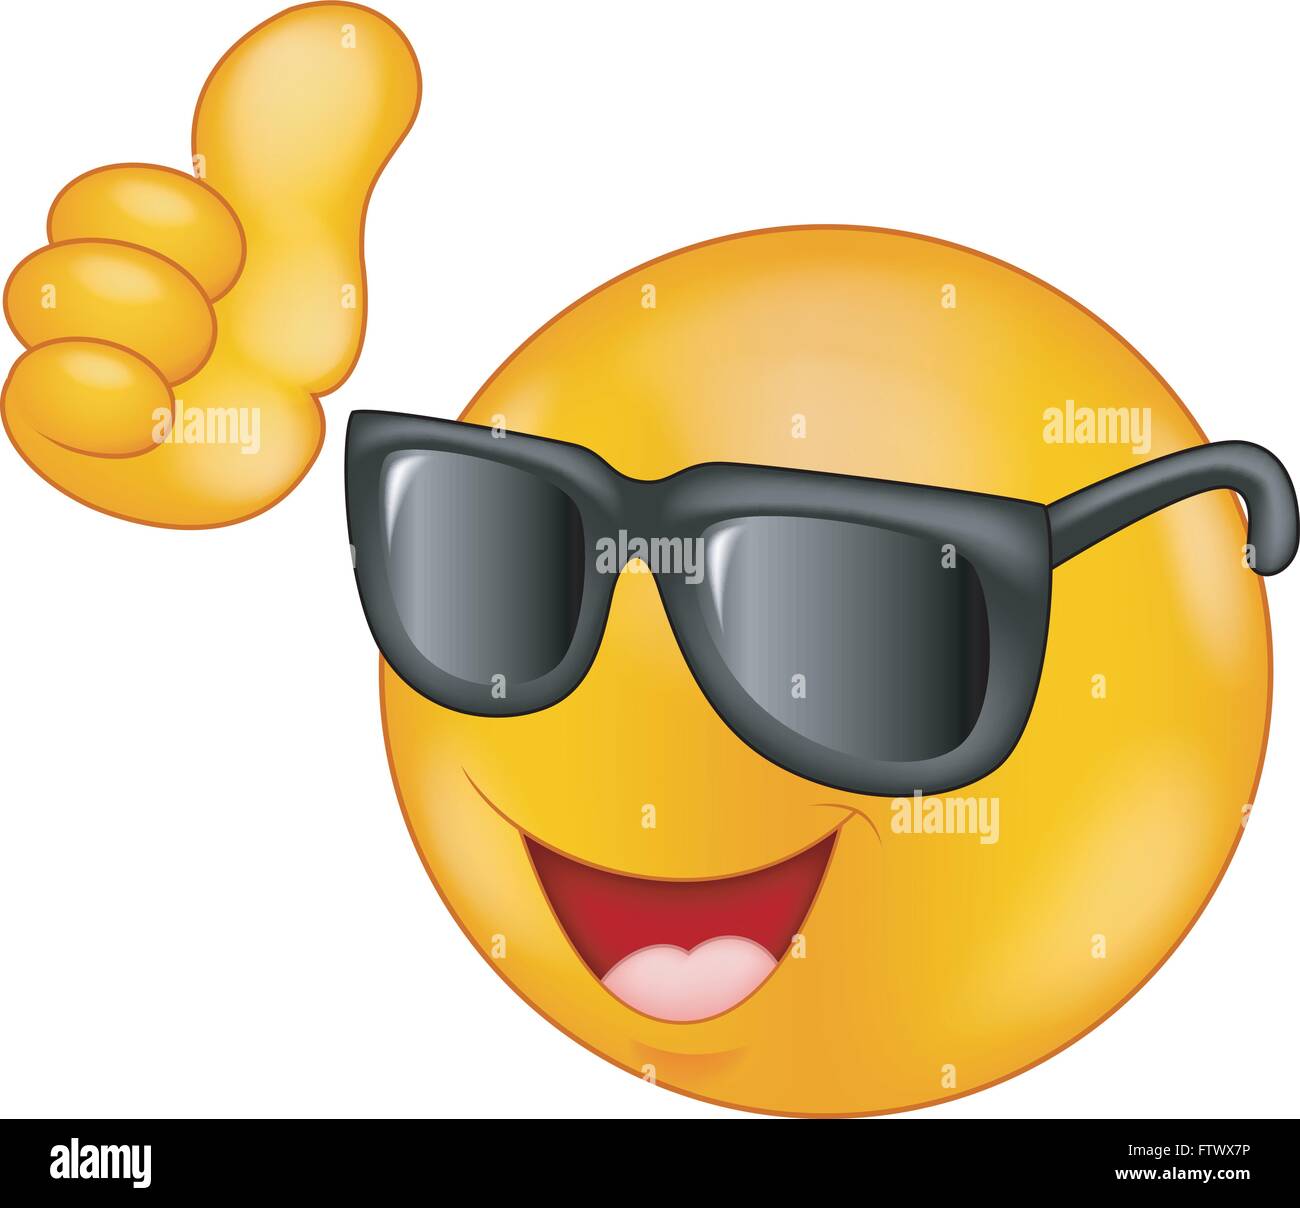 Smiling Smiley Mit Sonnenbrille Daumen Hoch Stock Vektorgrafik Alamy